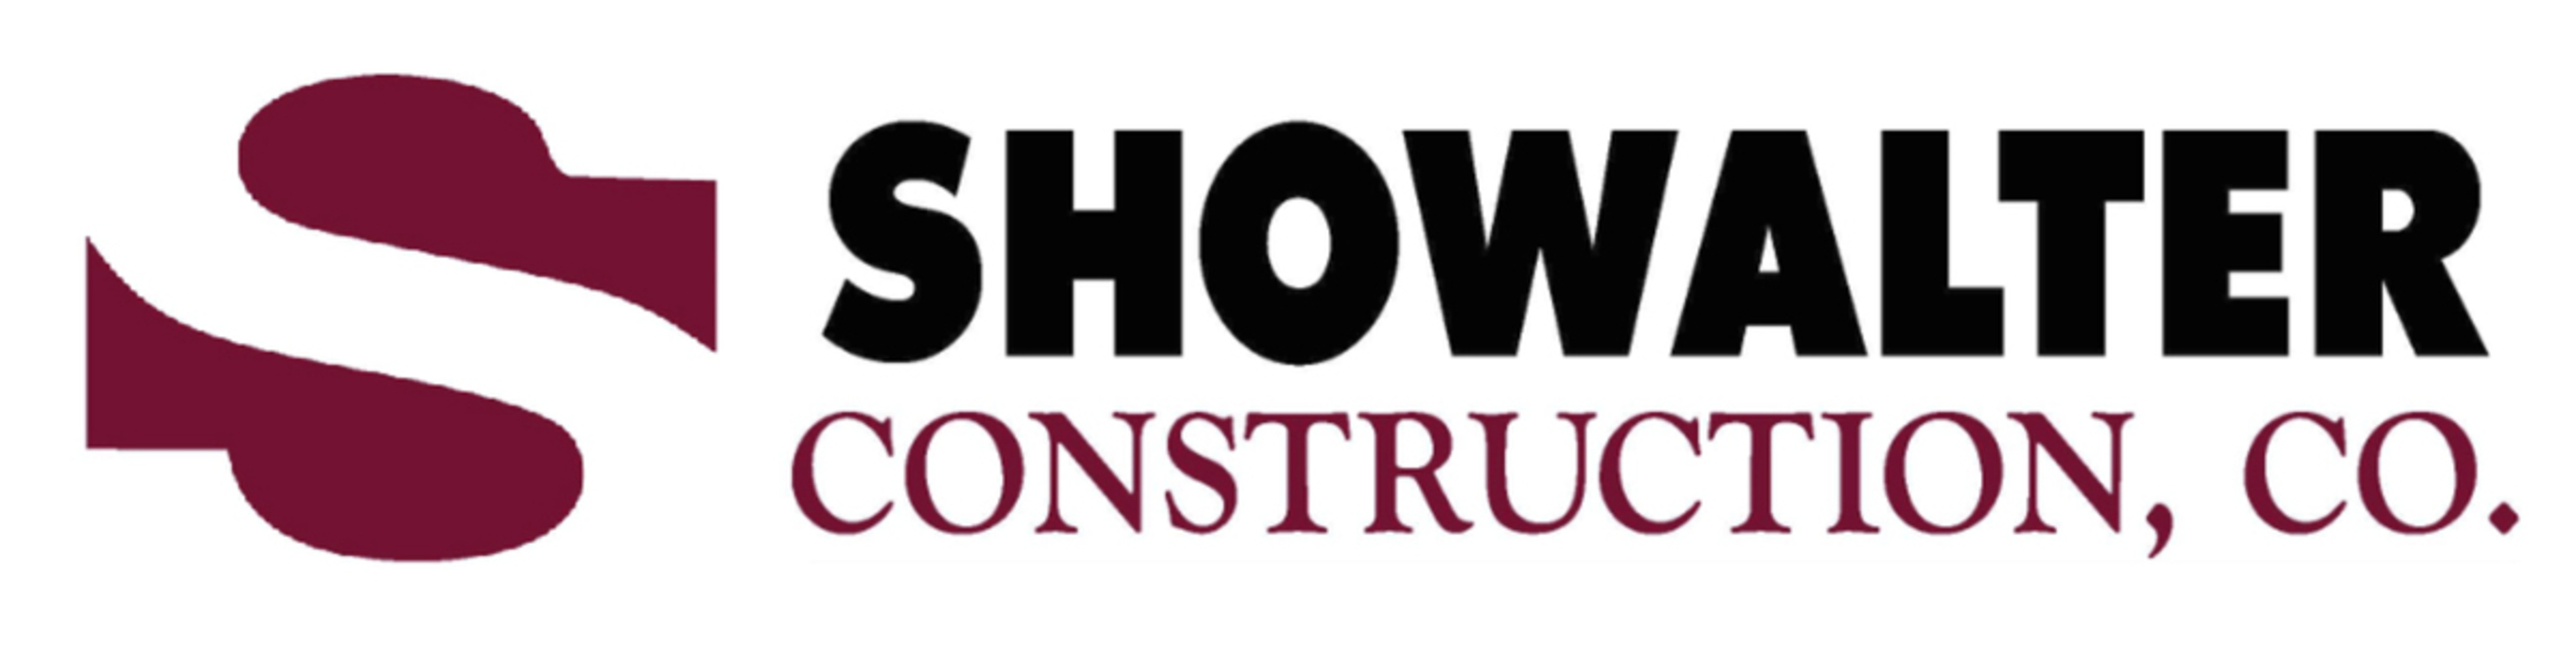 Showalter Construction